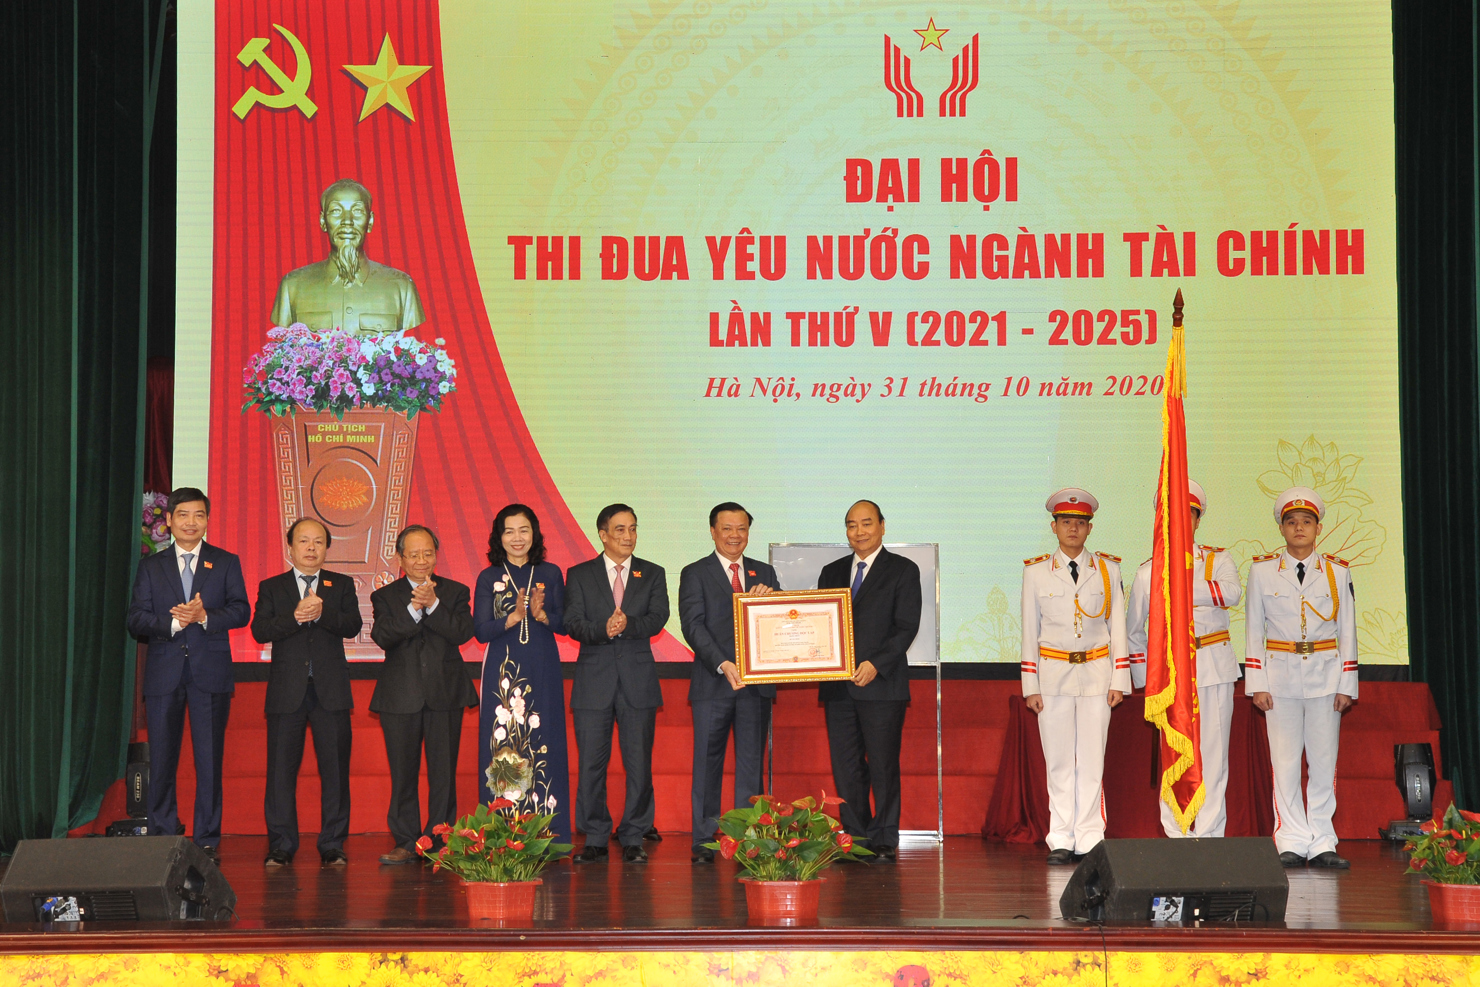 Bộ trưởng Bộ Tài chính Đinh Tiến Dũng thay mặt toàn ngành Tài chính đón nhận Huân chương Độc lập hạng Nhất do Thủ tướng Chính phủ trao tặng (ngày 31/10/2020)